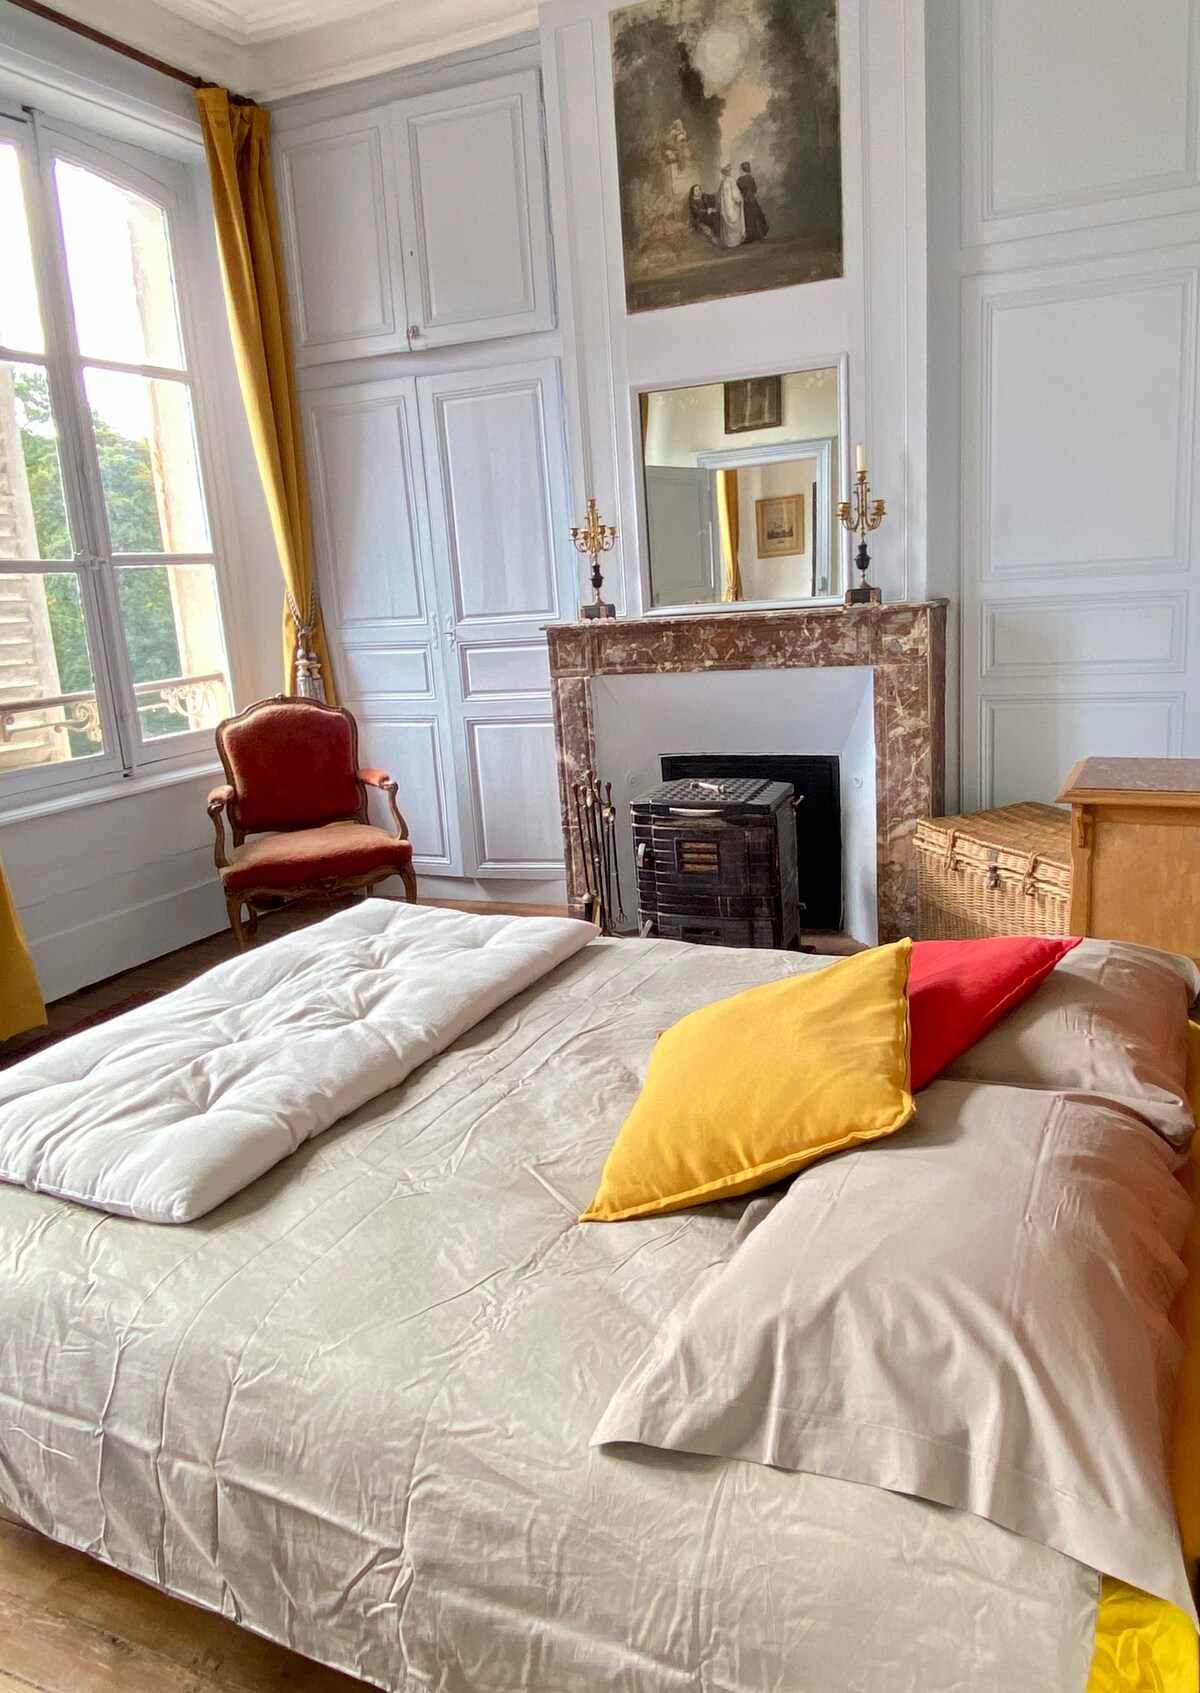 Bouillancourt Castle - Paul 's Room